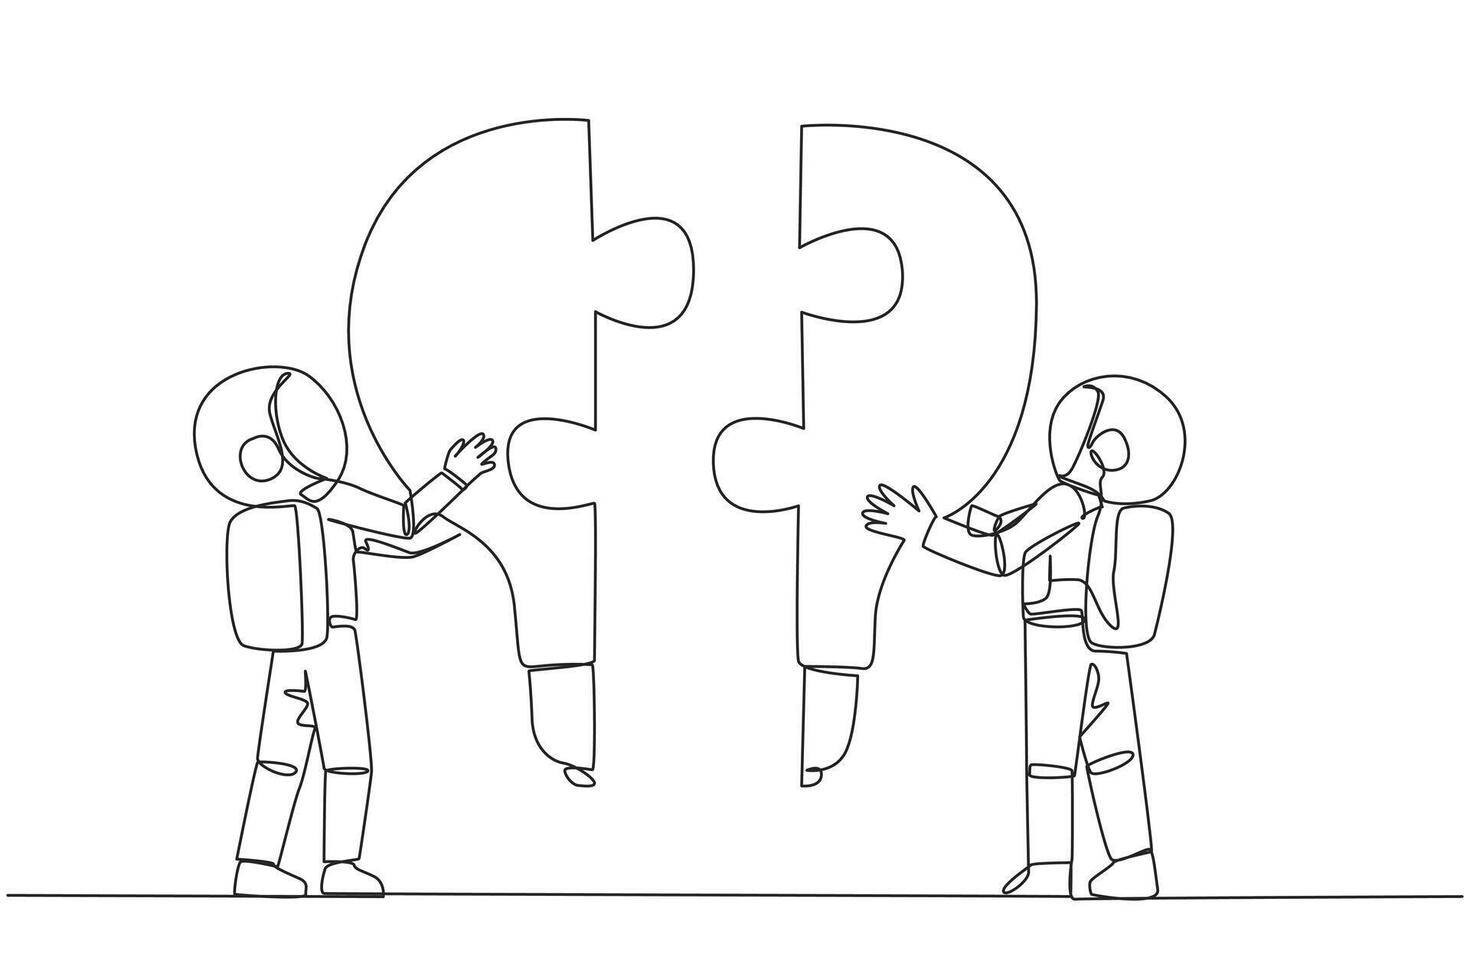 Single kontinuierlich Linie Zeichnung zwei Astronauten halten oben zwei glühbirnenförmig Puzzle Stücke. Metaphern erheben und Vereinen brillant Ideen. tief Raum Zusammenarbeit. einer Linie Design Vektor Illustration